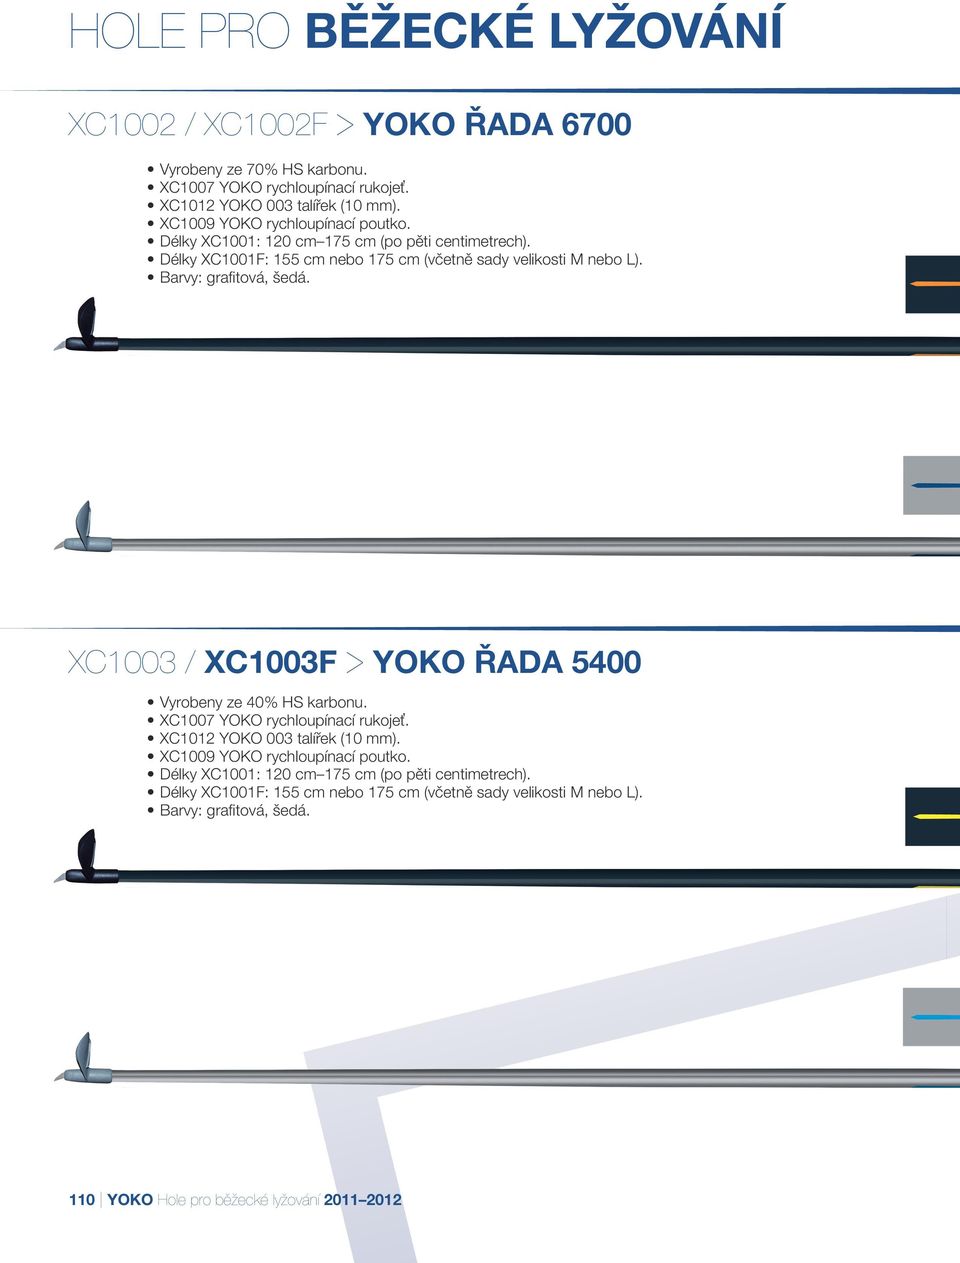 Barvy: grafitová, šedá. XC1003 / XC1003F > YOKO Řada 5400 Vyrobeny ze 40% HS karbonu. XC1007 YOKO rychloupínací rukojeť. XC1012 YOKO 003 talířek (10 mm).